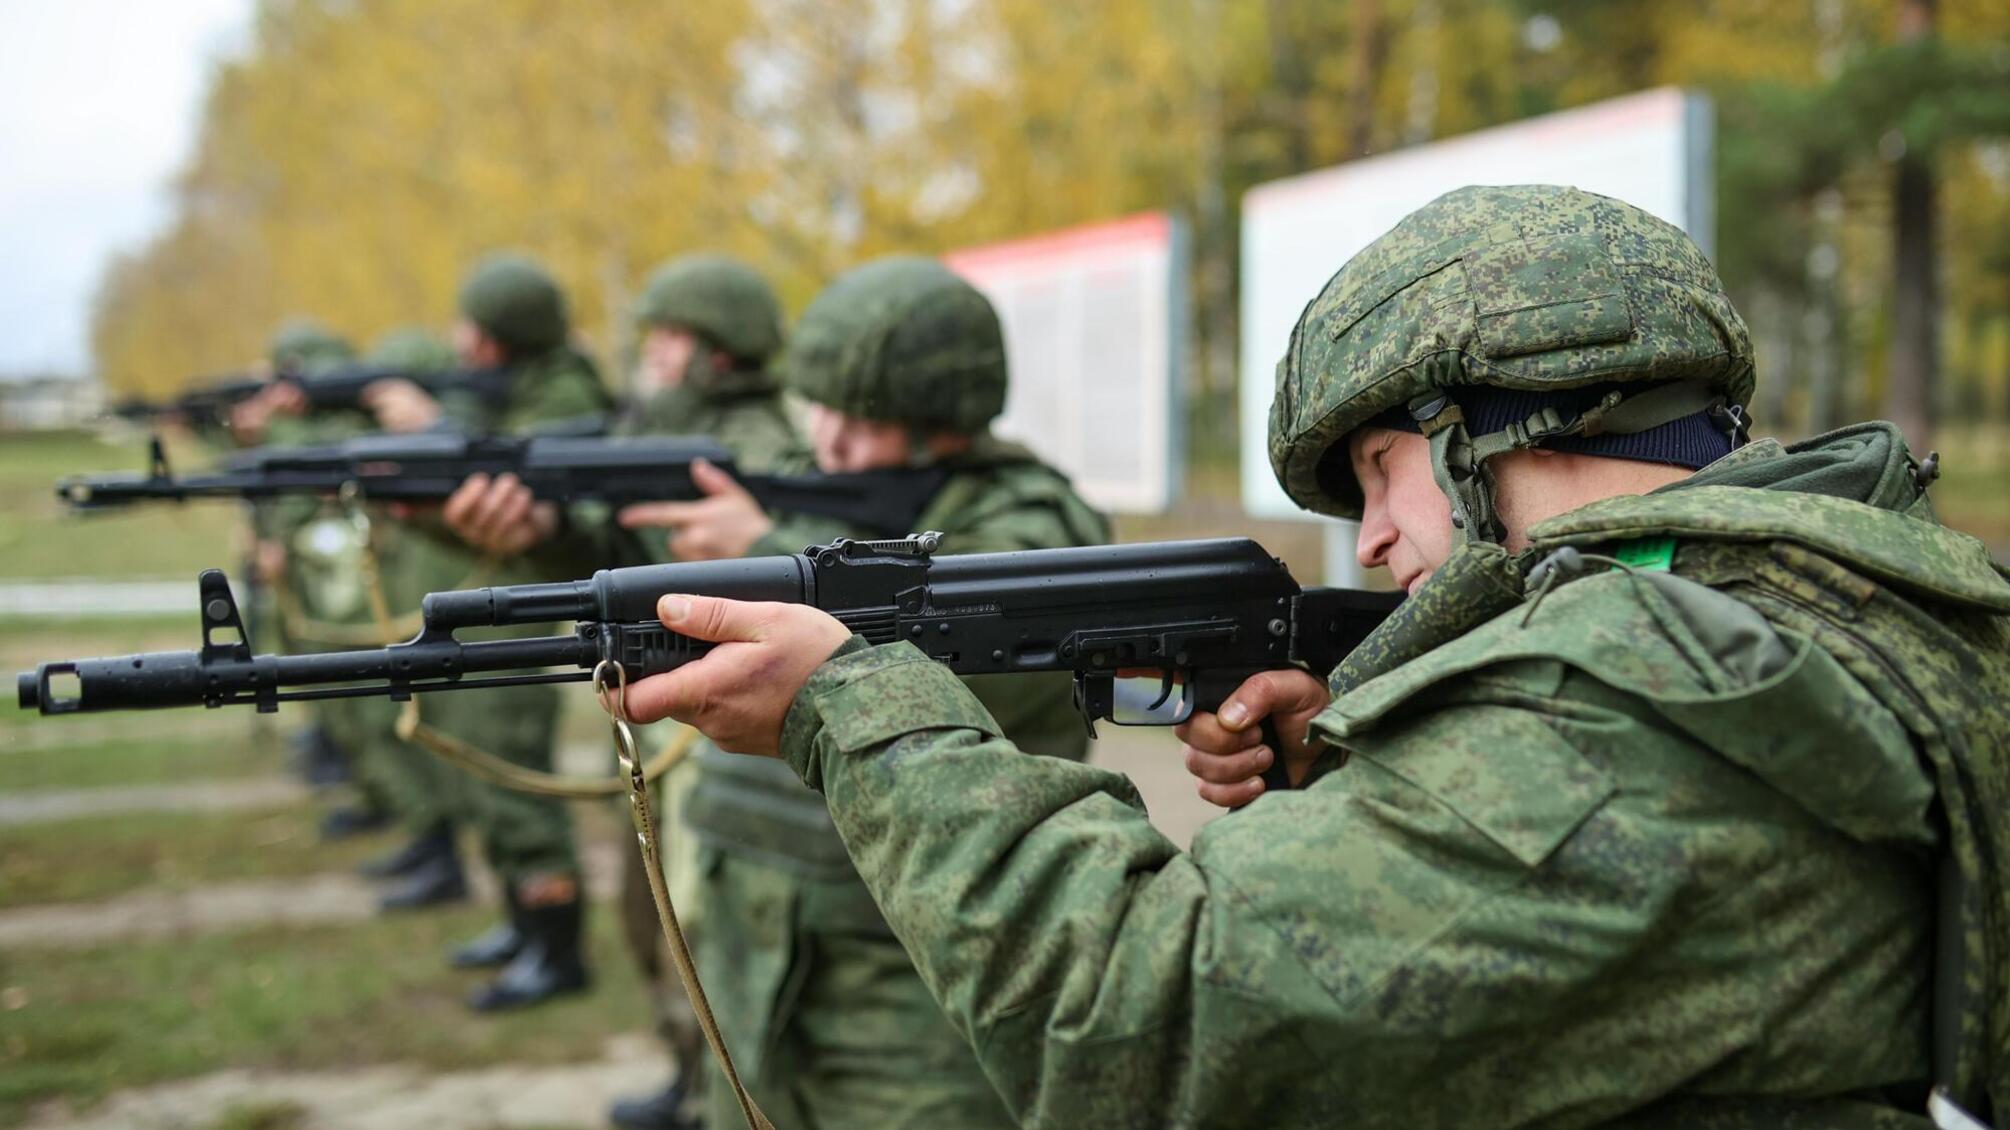 Стрельба возле Белгорода: трое солдат открыли огонь в воинской части (обновление)